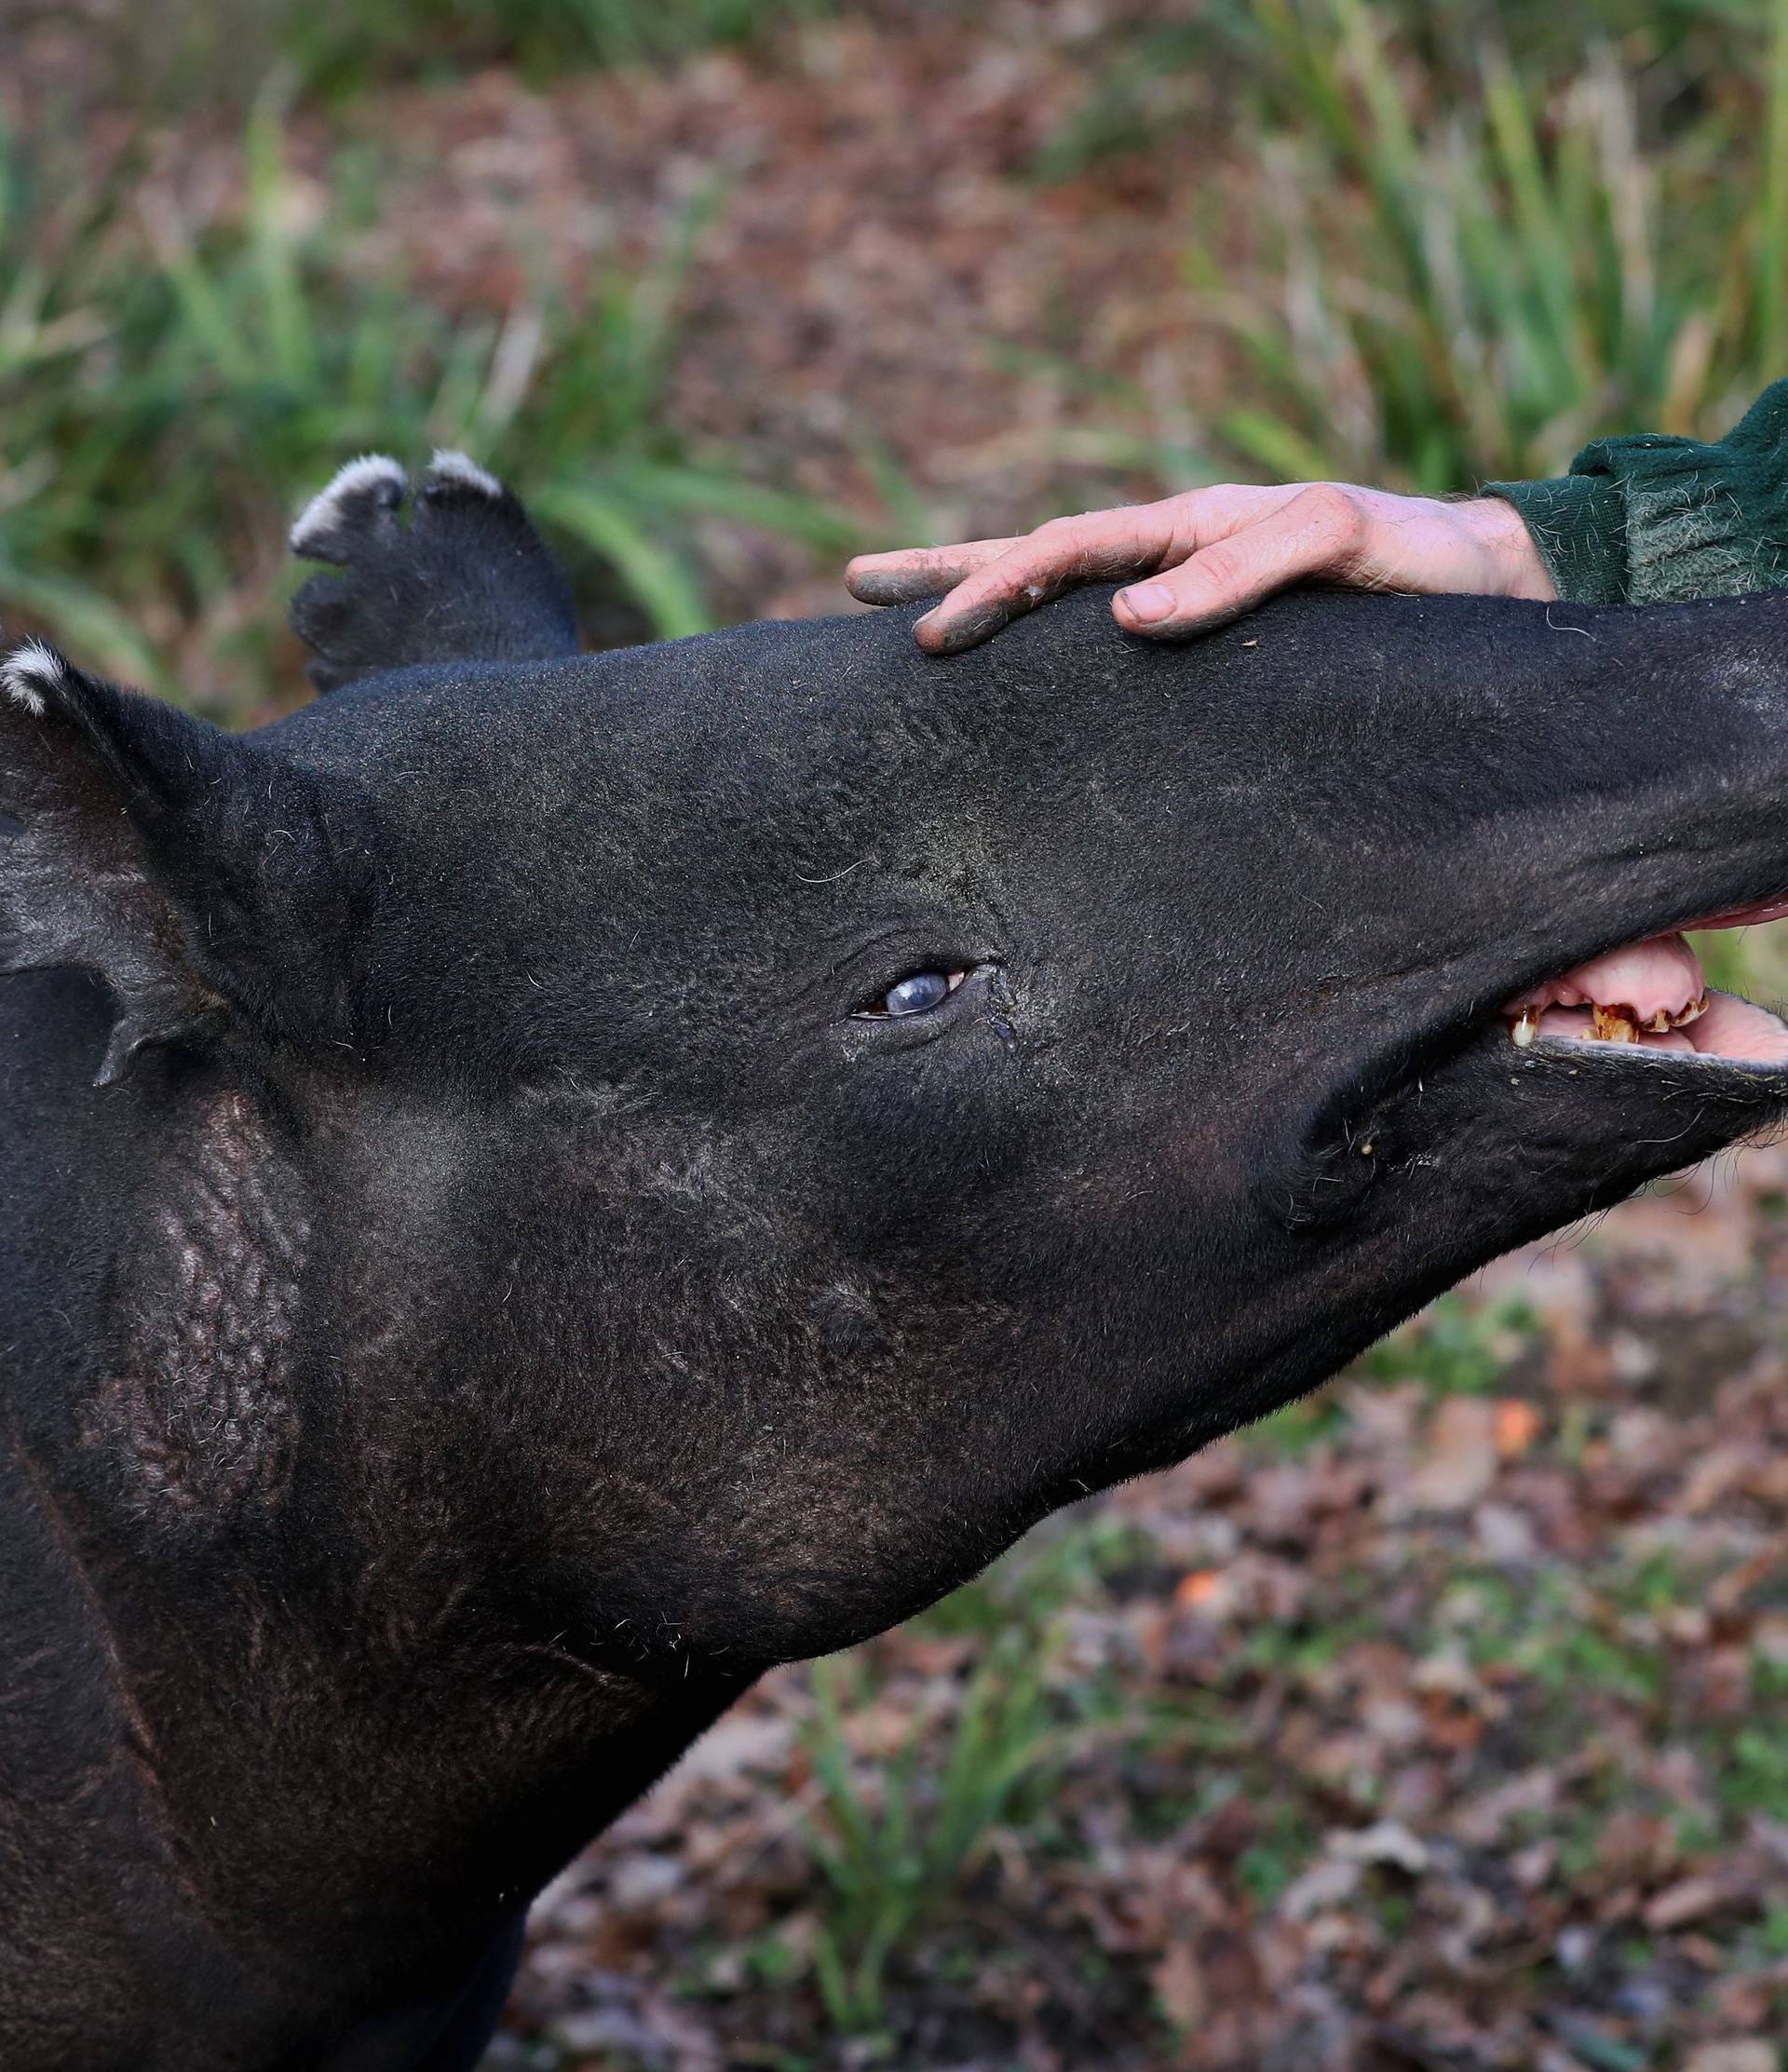 Europe's oldest Malayan tapir